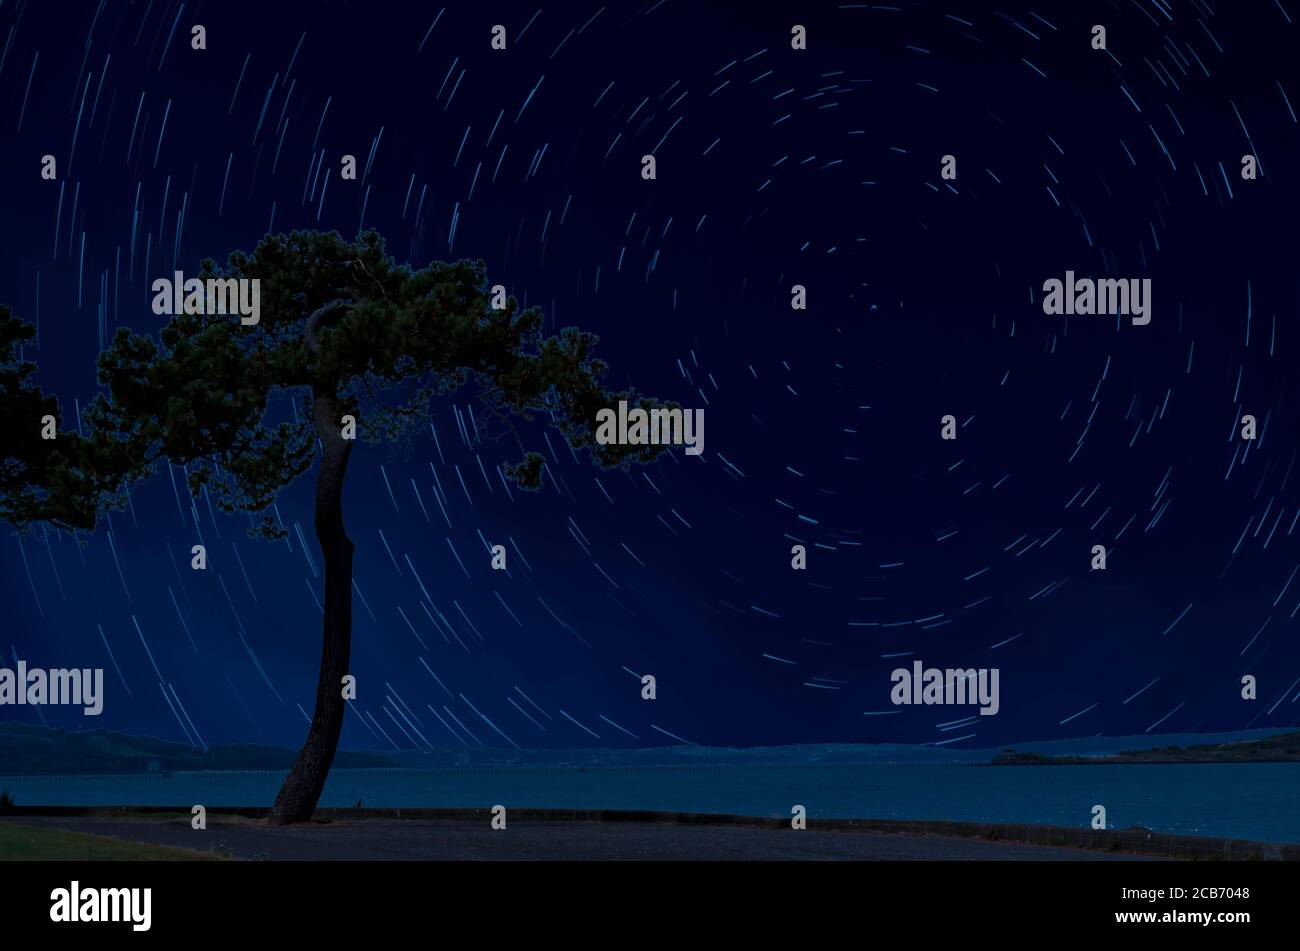 Schönes Track-Star-Bild während einer Nacht. Lange Exposition für Spuren von Sternen. Stockfoto